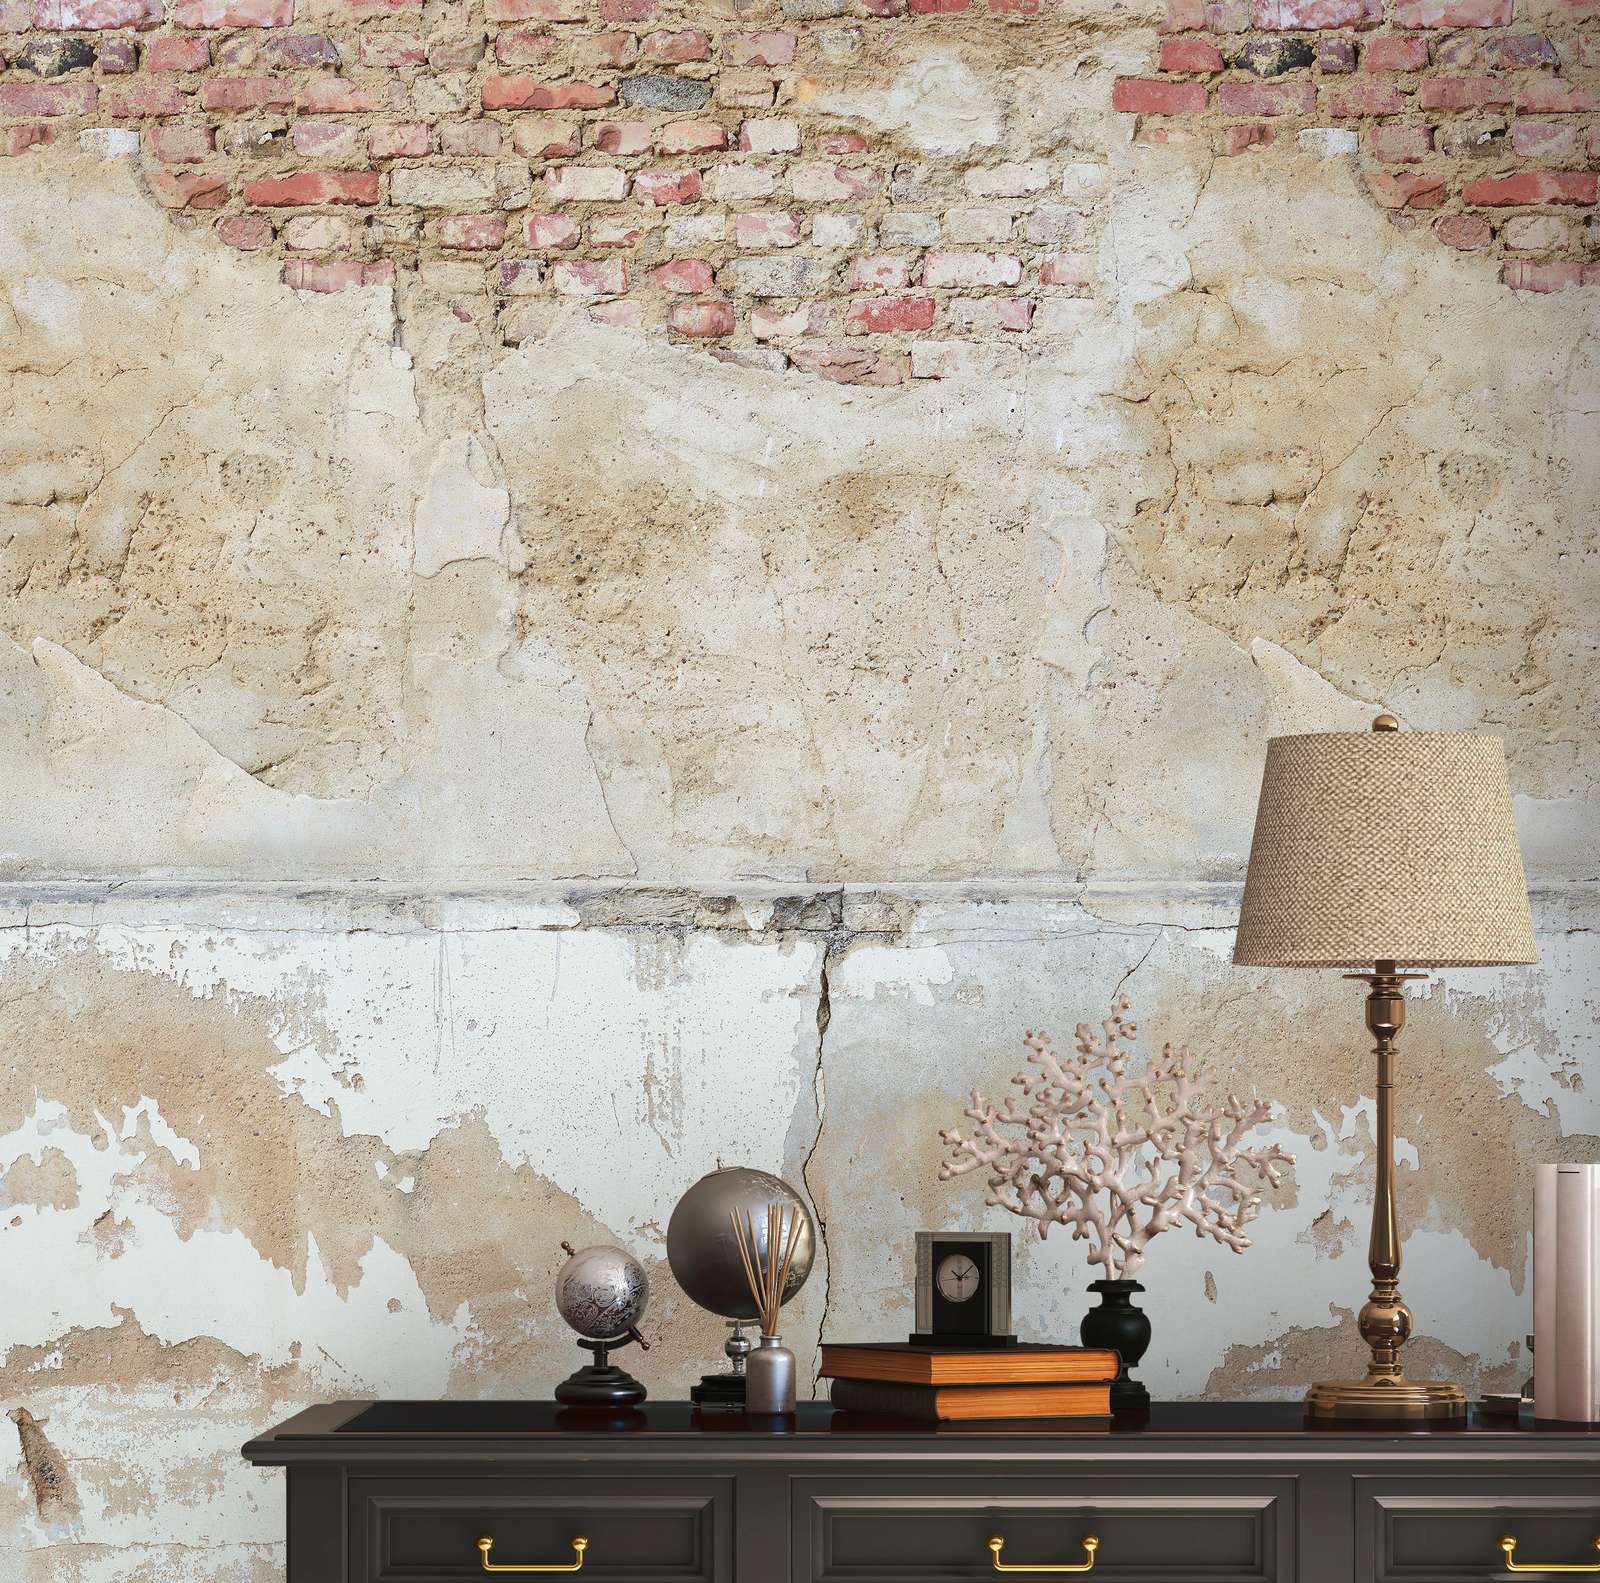             Steenmuurbehang met betonlook in abstracte look - beige, grijs, bruin
        